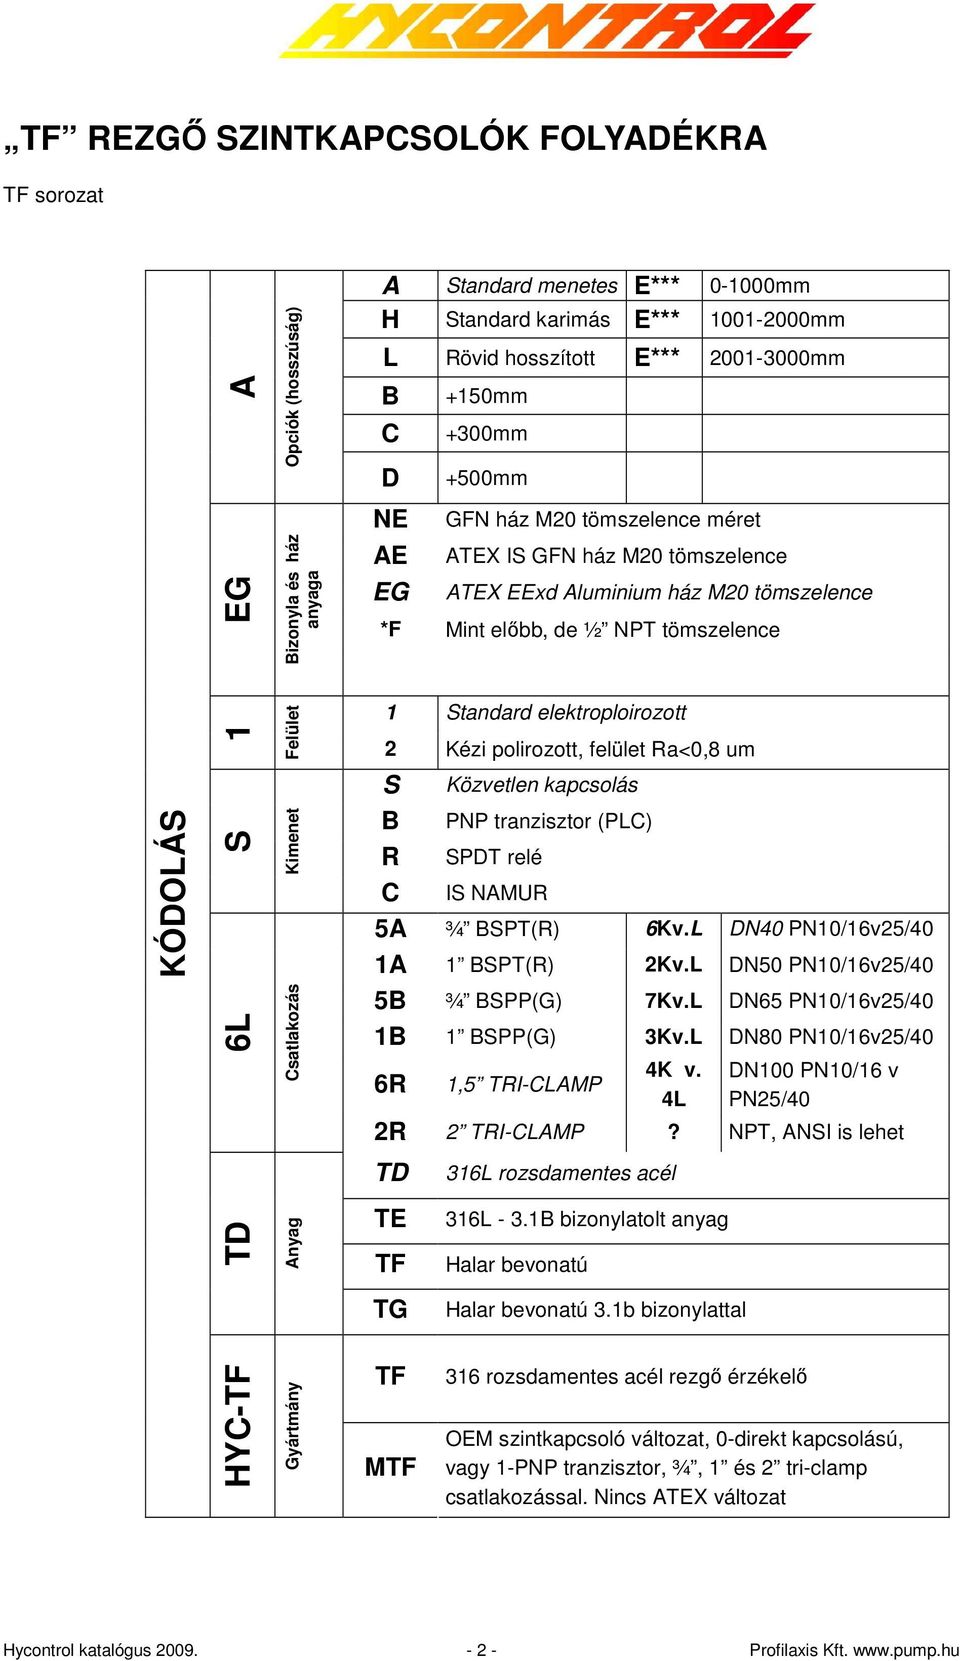 Kimenet Felület 1 Standard elektroploirozott 2 Kézi polirozott, felület Ra<0,8 um S Közvetlen kapcsolás B PNP tranzisztor (PLC) R SPDT relé C IS NAMUR 5A ¾ BSPT(R) 6Kv.